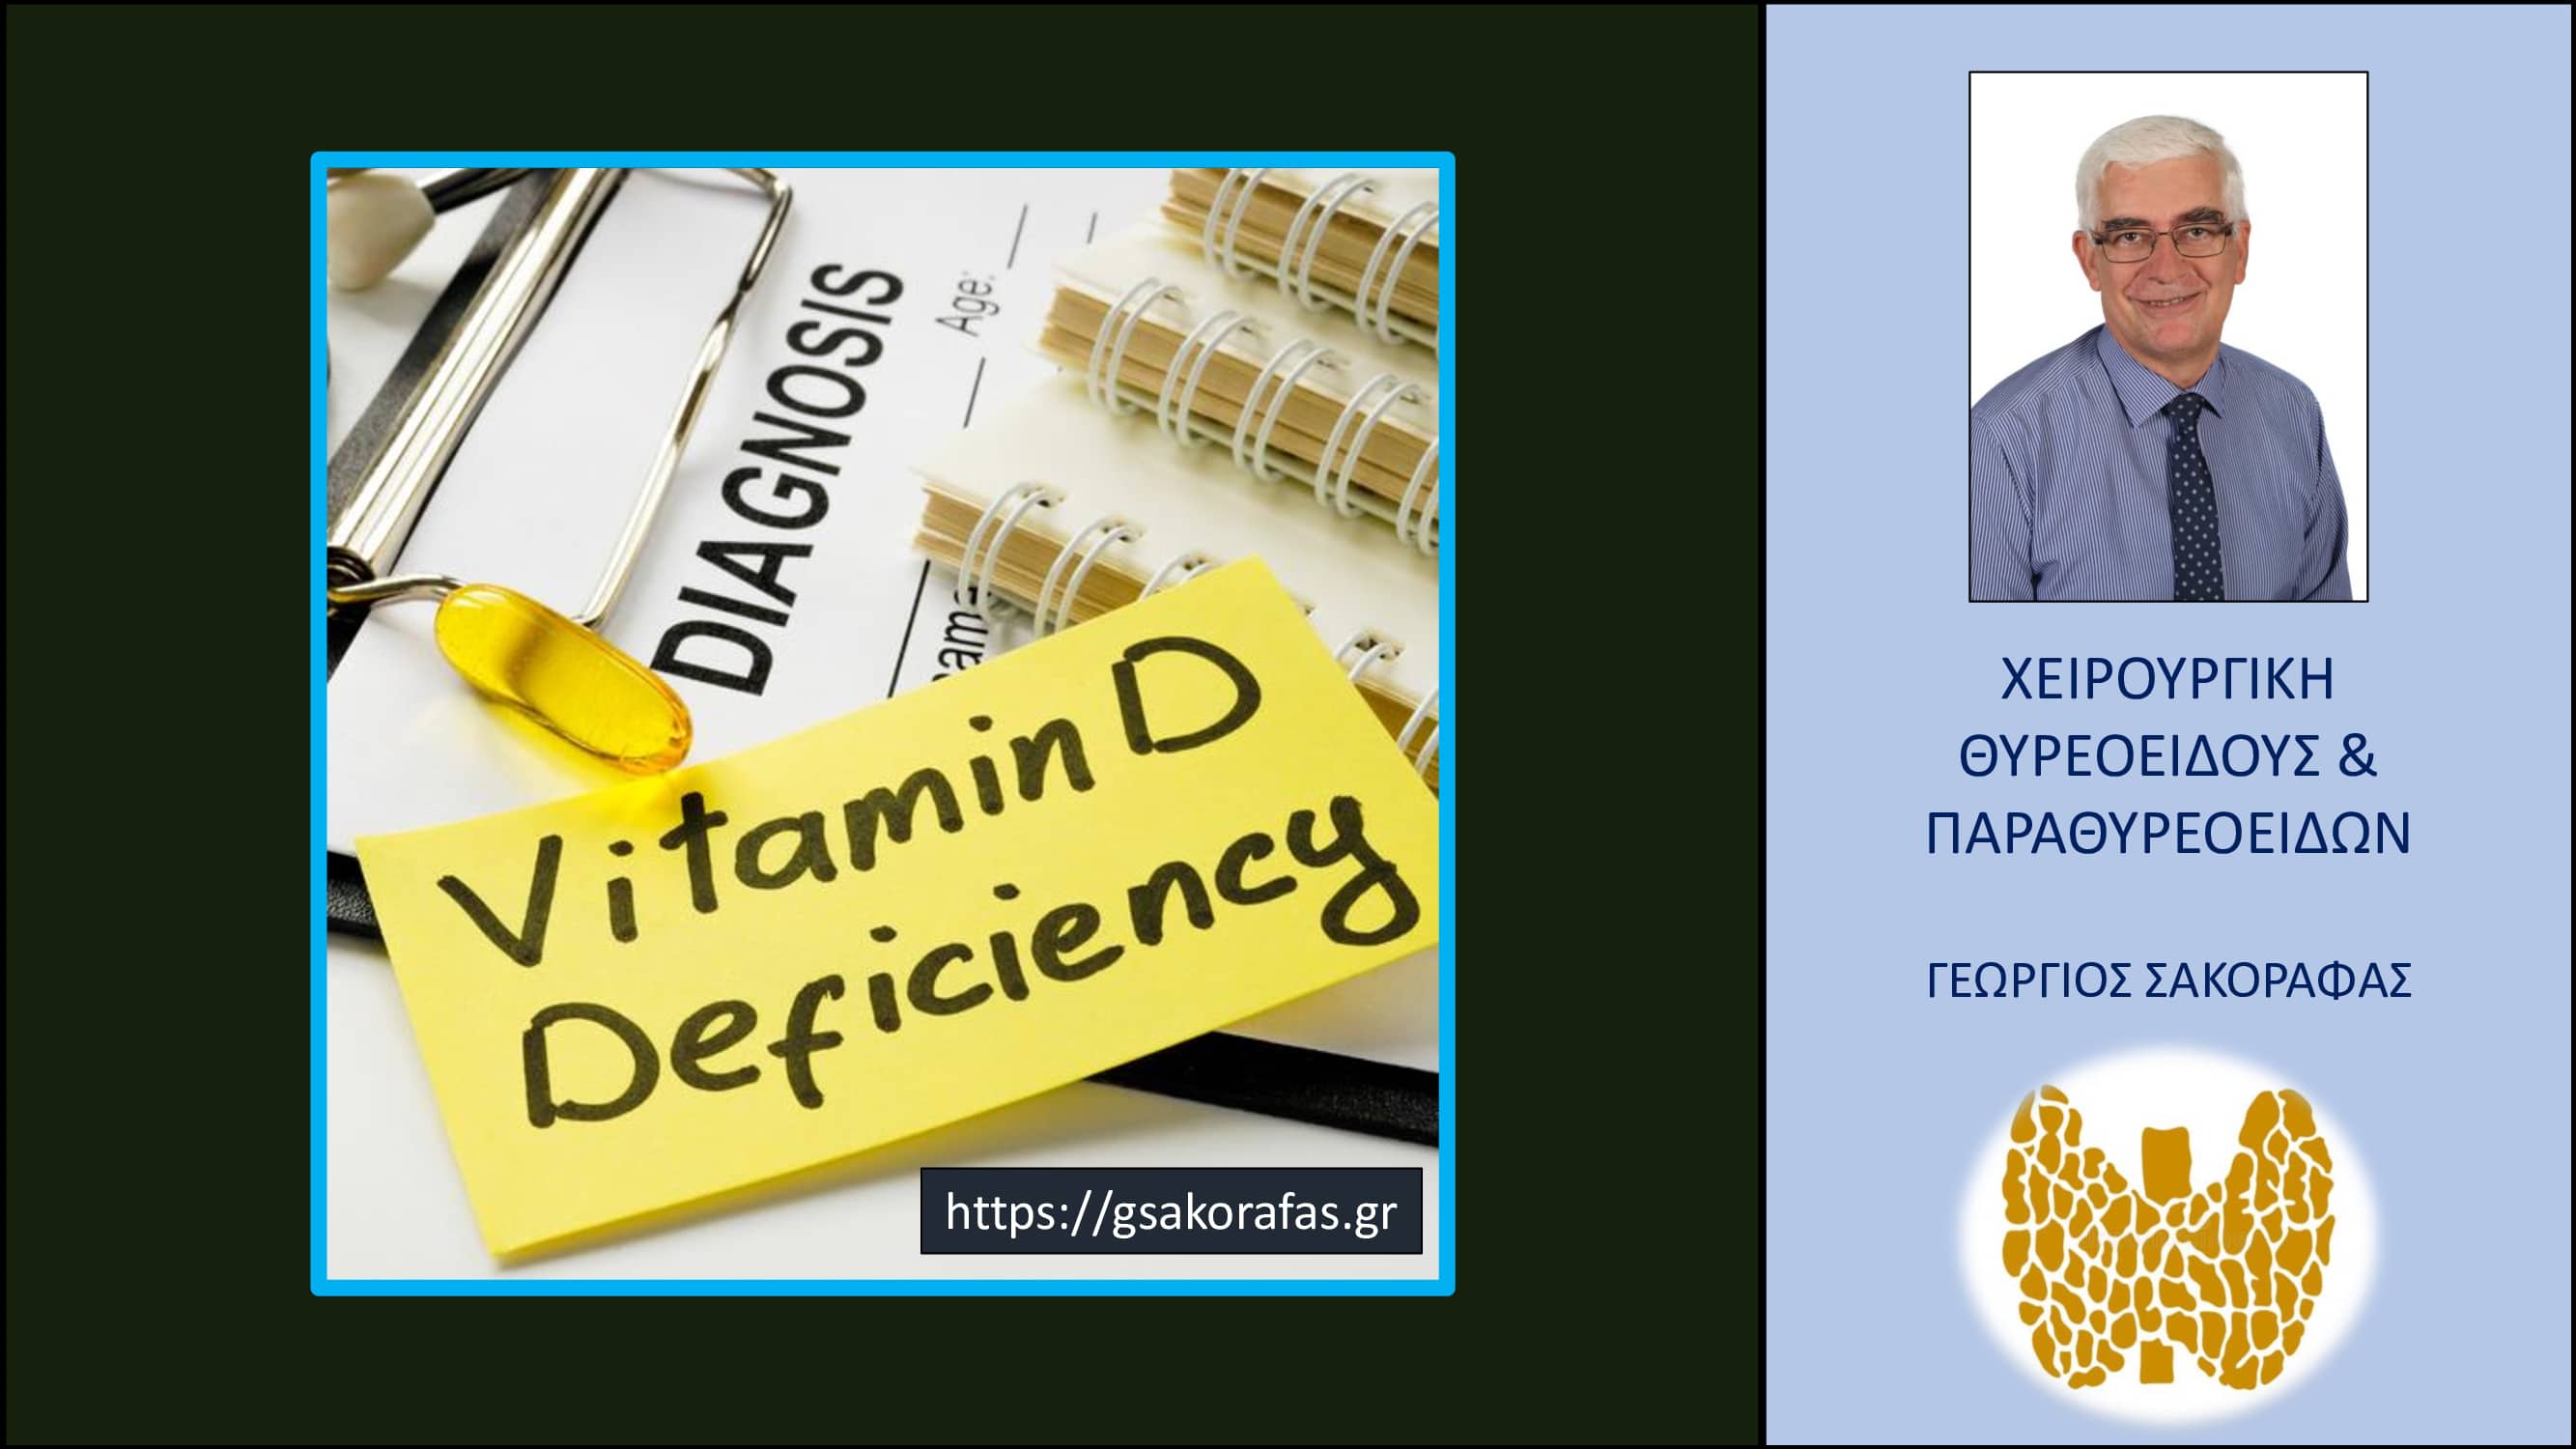 Παραθυρεοειδείς και βιταμίνη D – τι προβλήματα μπορεί να προκαλέσει η έλλειψη βιταμίνης D (υποβιταμίνωση)?